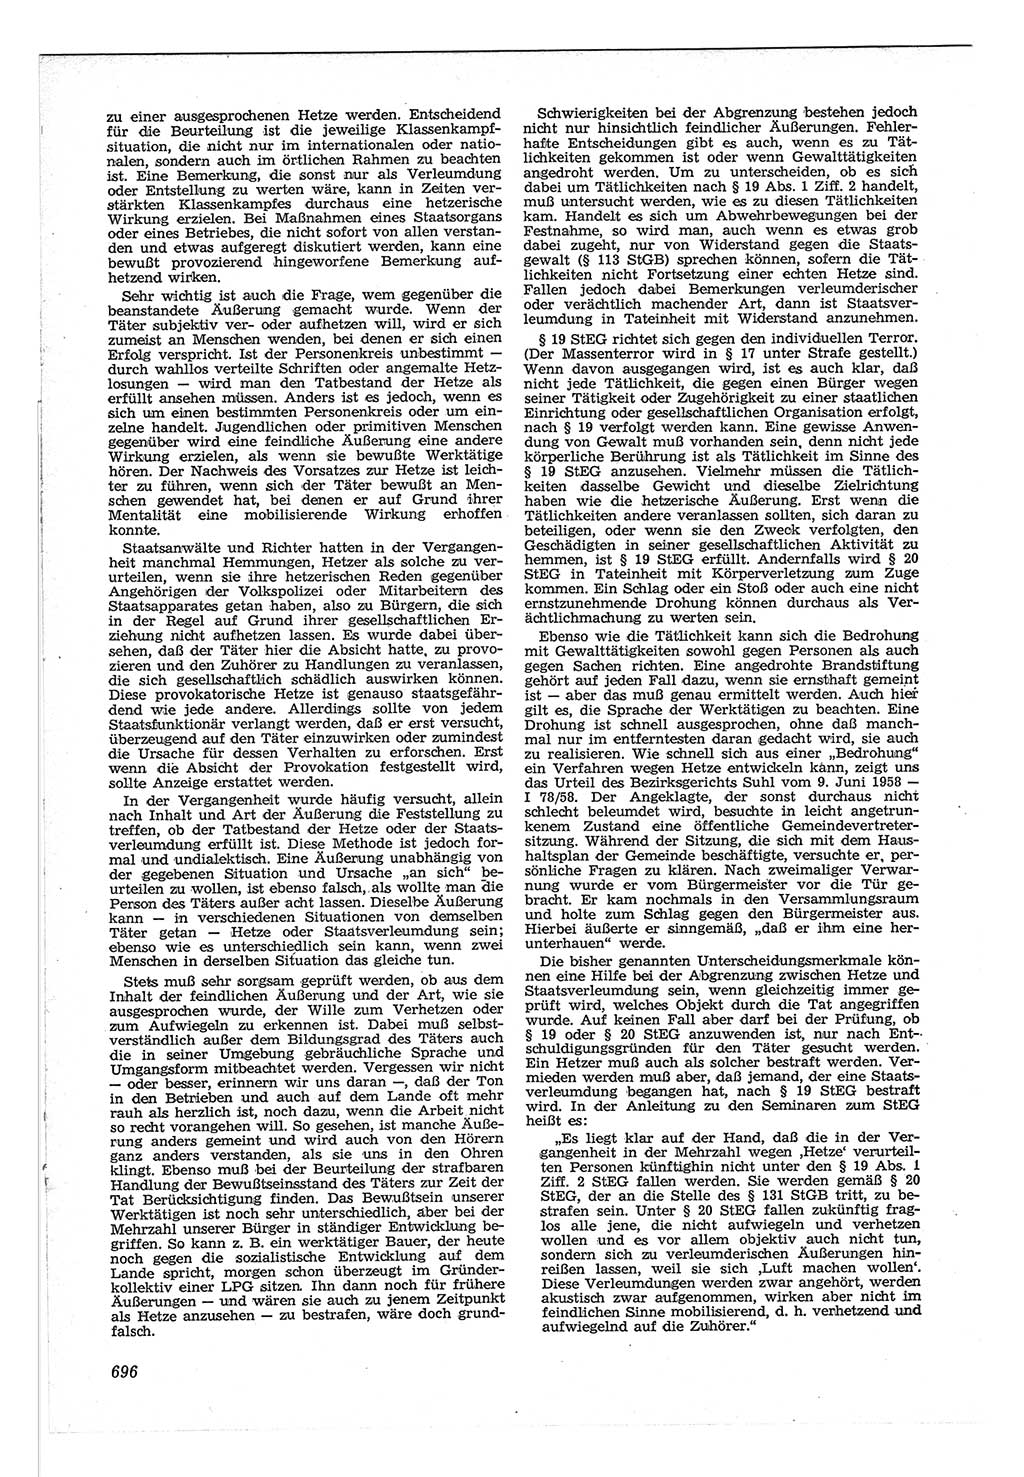 Neue Justiz (NJ), Zeitschrift für Recht und Rechtswissenschaft [Deutsche Demokratische Republik (DDR)], 12. Jahrgang 1958, Seite 696 (NJ DDR 1958, S. 696)